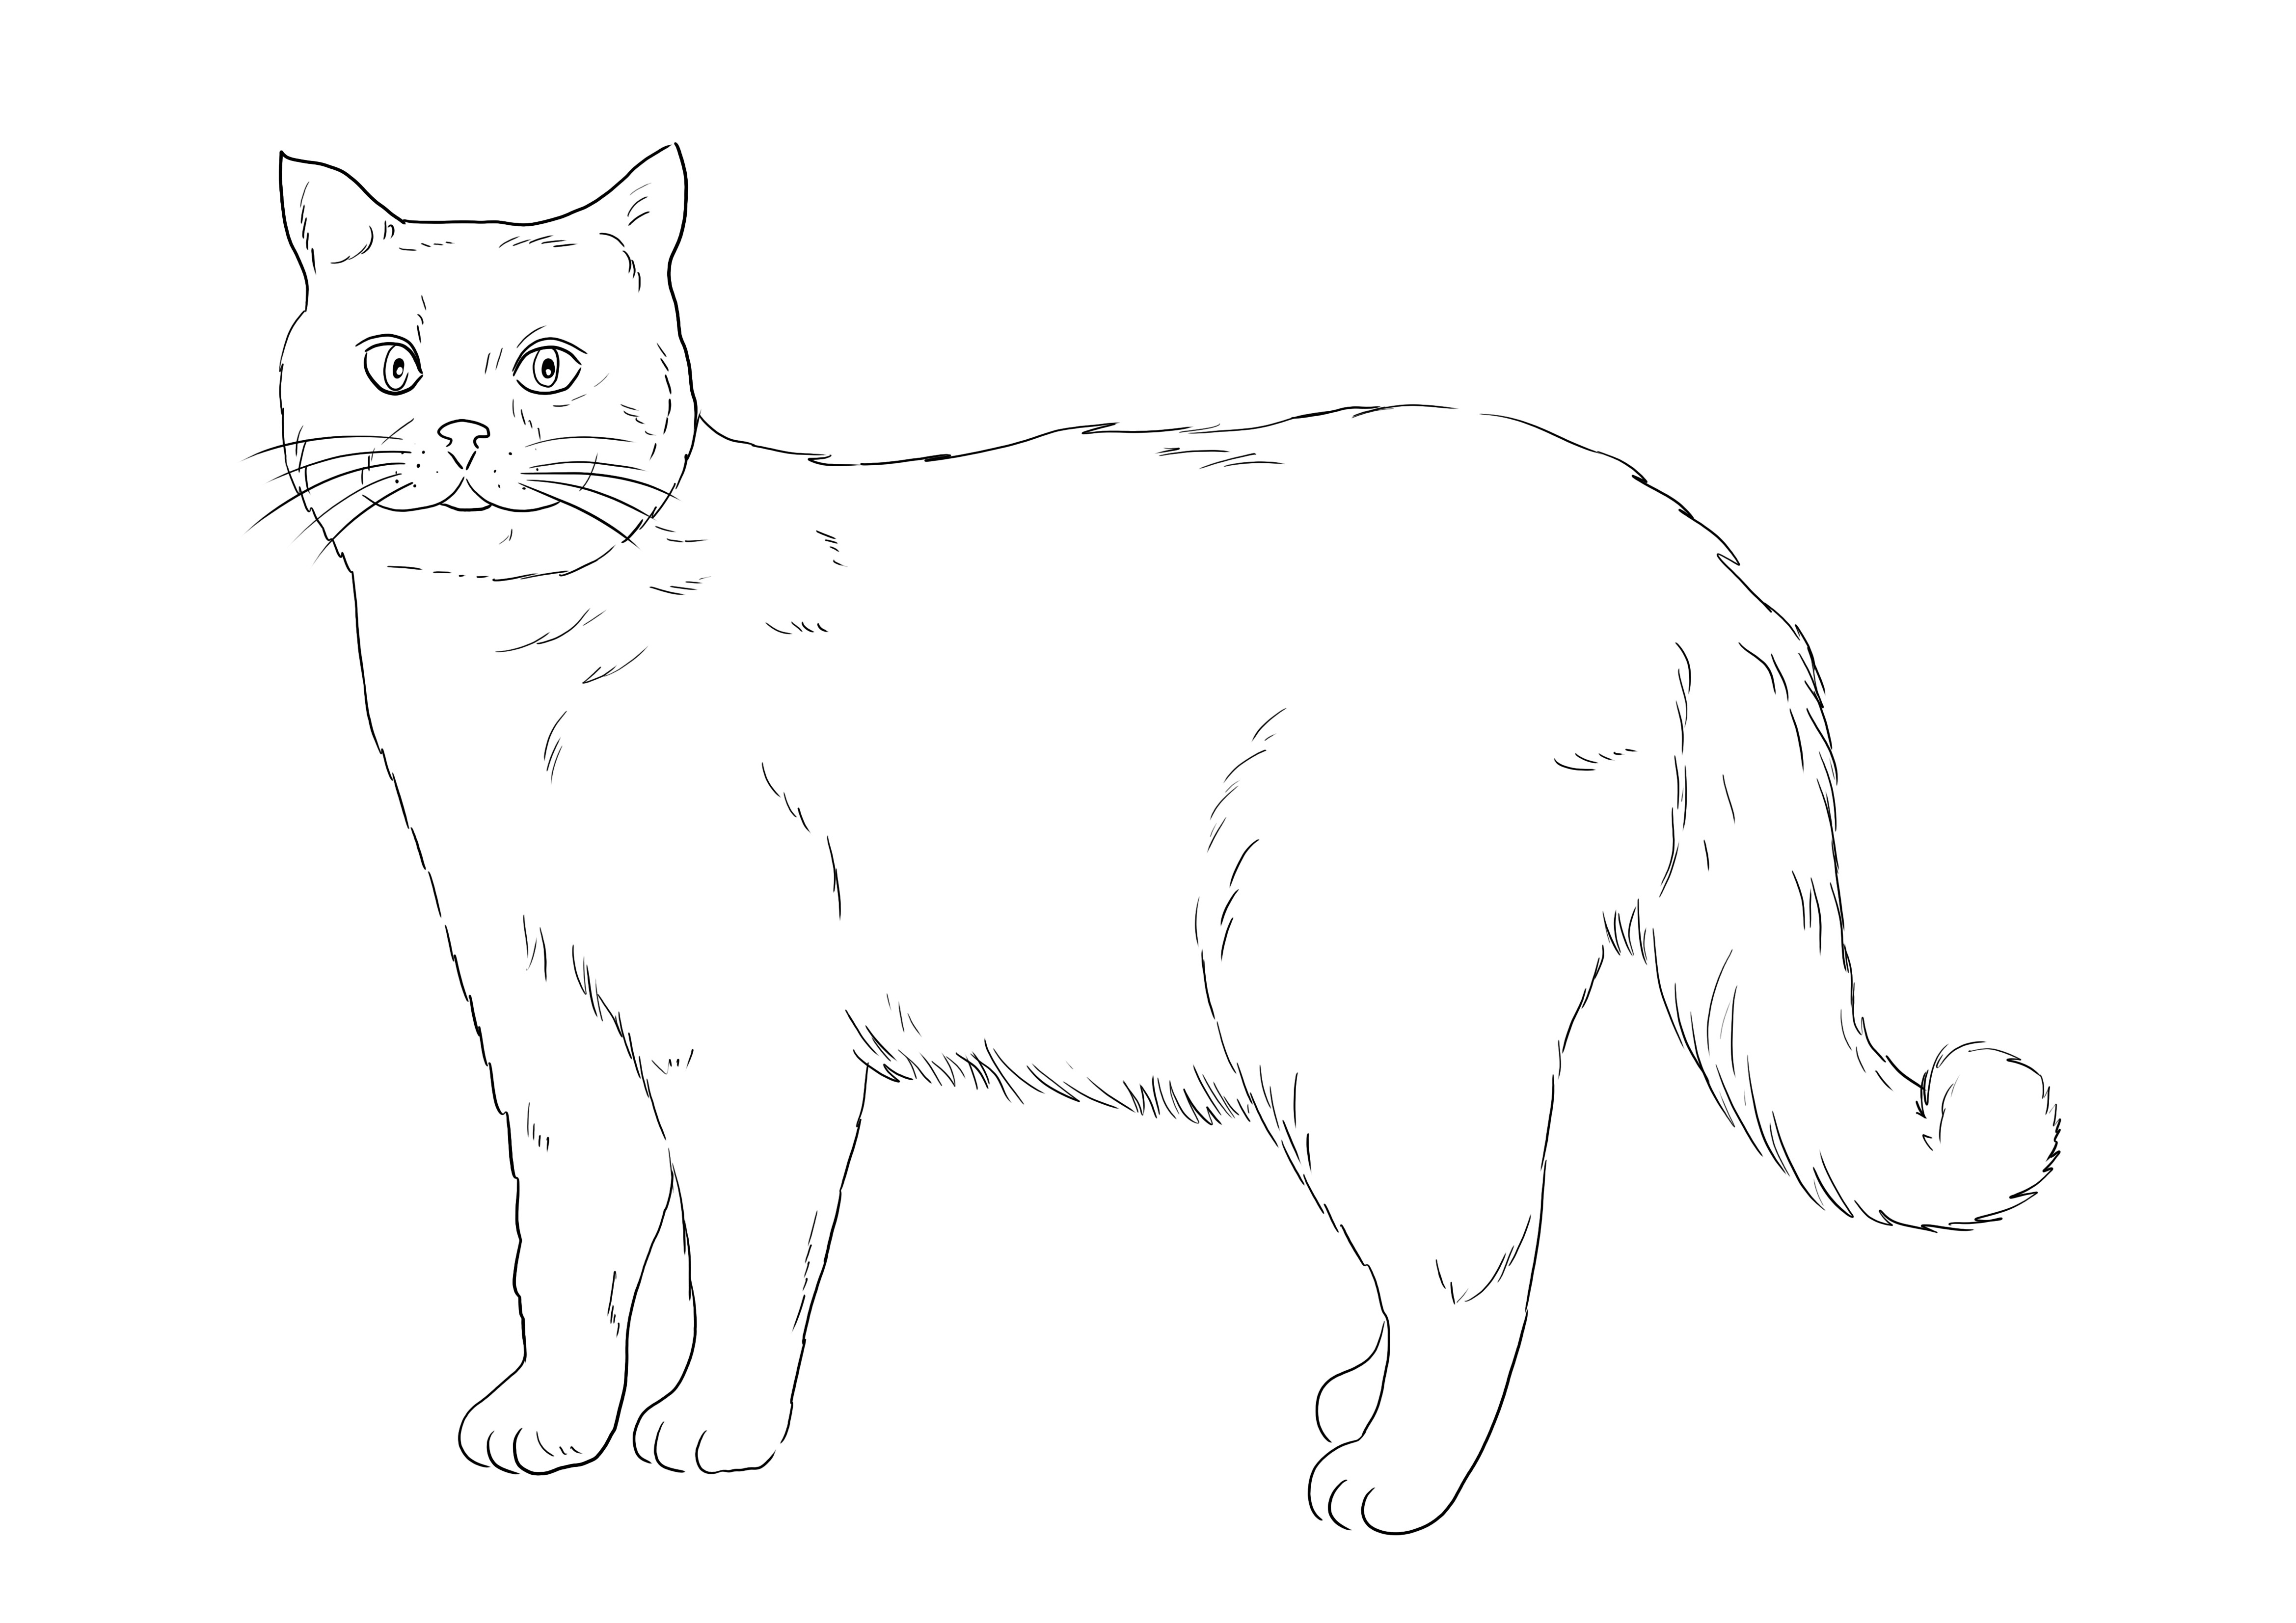 Gratuit pour la coloration de British Shorthair Cat à imprimer ou à enregistrer pour plus tard et à colorier